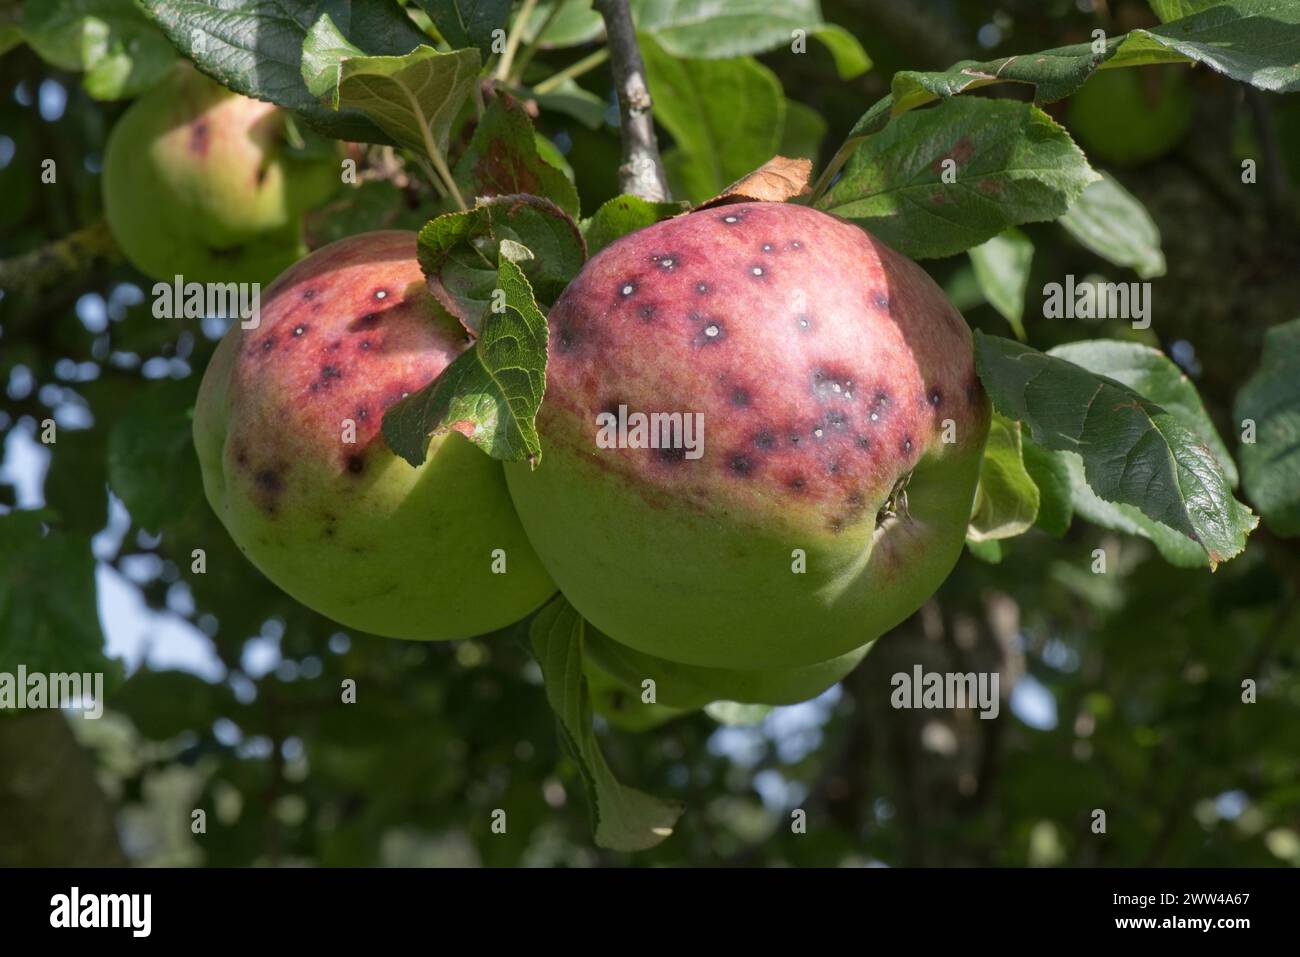 Petites lésions discrètes, symptôme de la gale de la pomme (Venruria inaequalis) sur grande pomme Blenheim mature Orange en été, Berkshire, août Banque D'Images